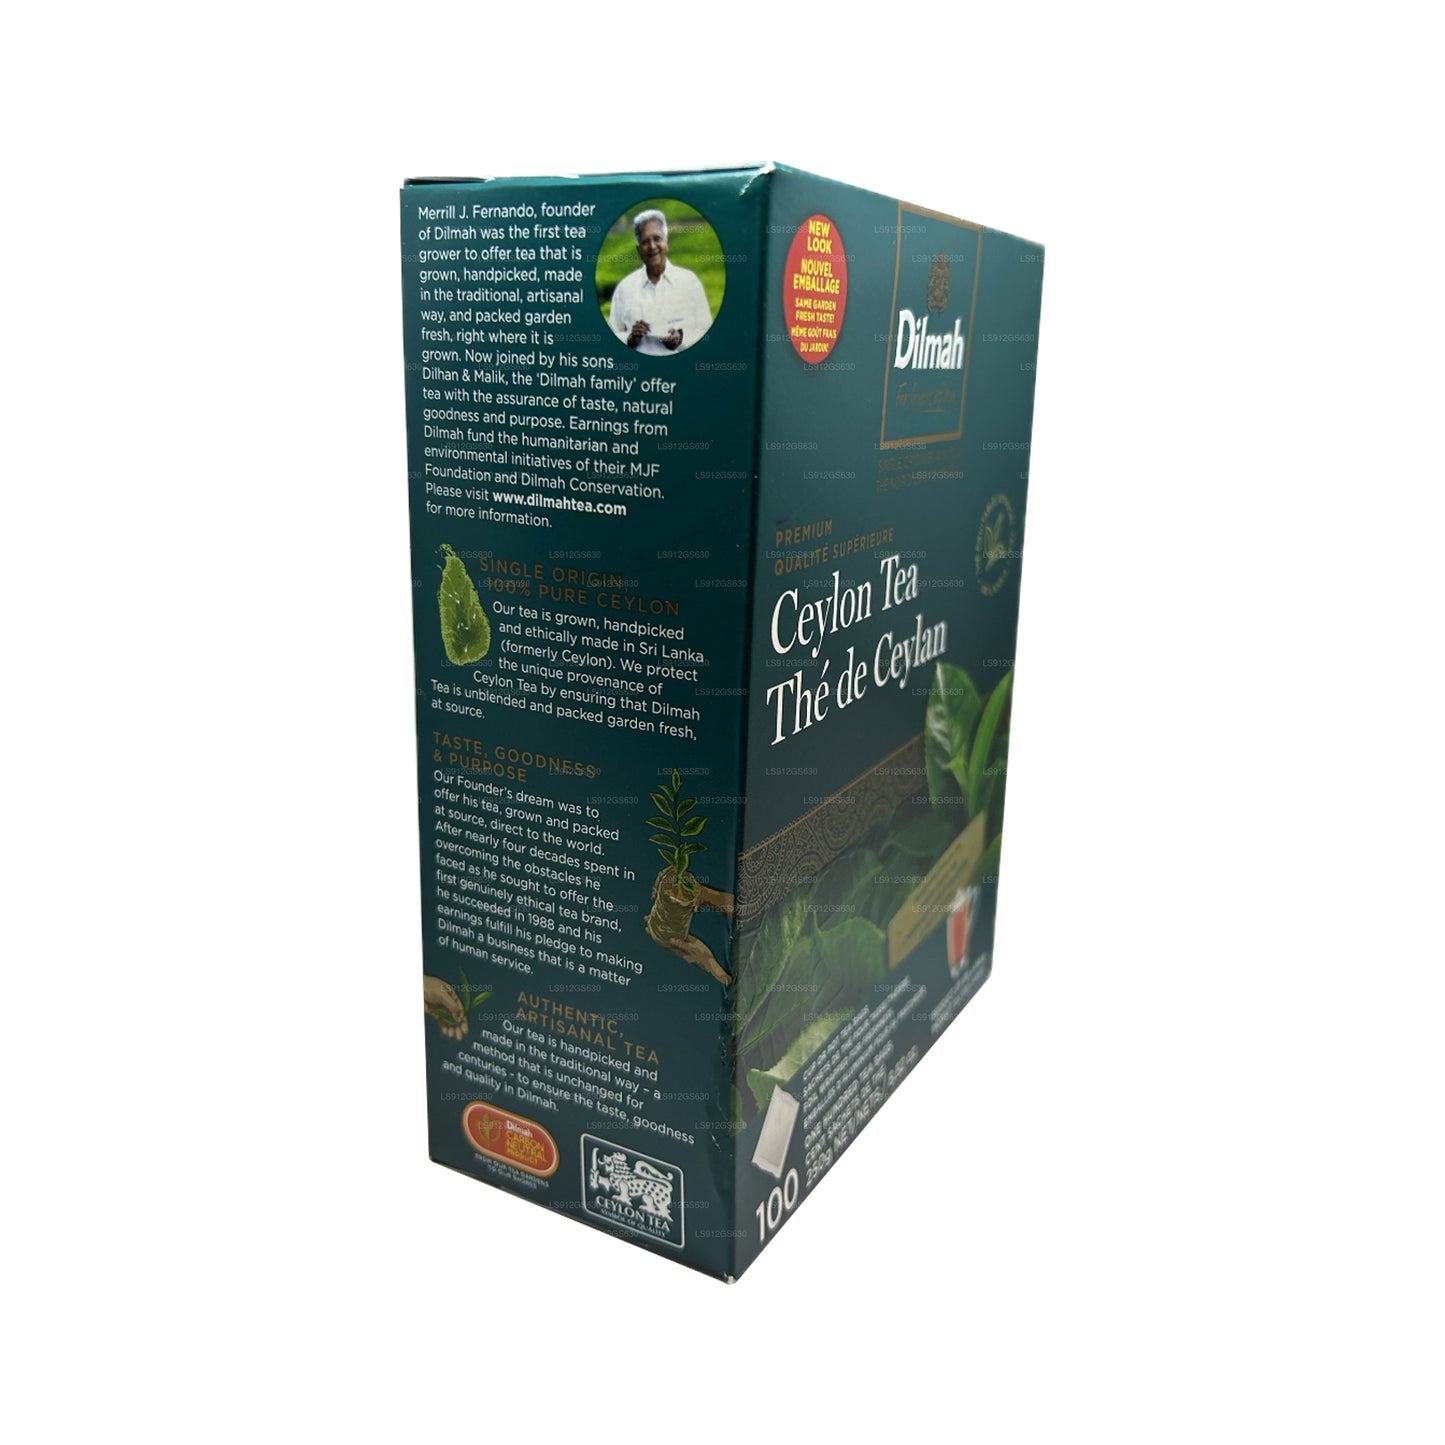 Té de Ceilán Dilmah Premium (250 g), 100 bolsitas de té sin etiquetas